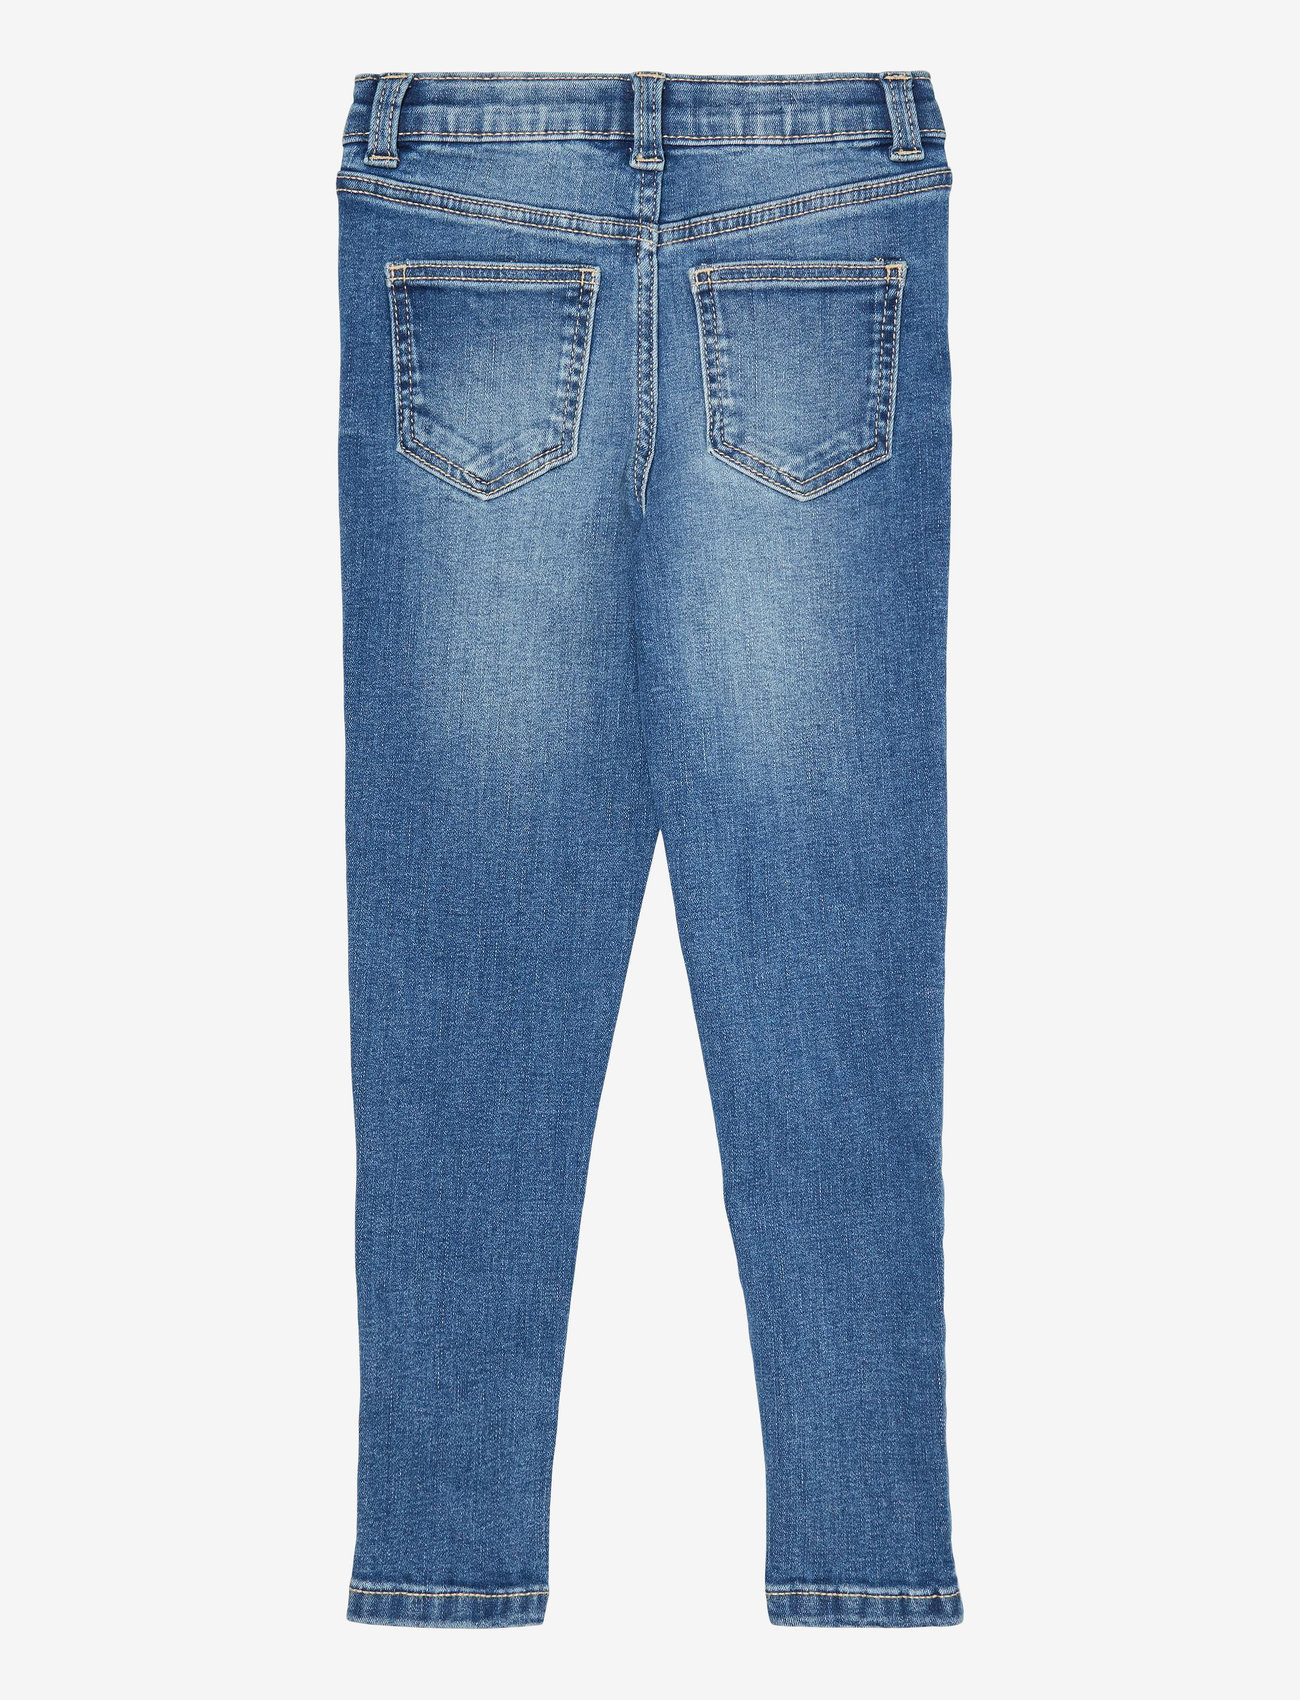 Vero Moda Girl - VMAVA SLIM DENIM JEANS VI3285 GIRL NOOS - skinny jeans - medium blue denim - 1